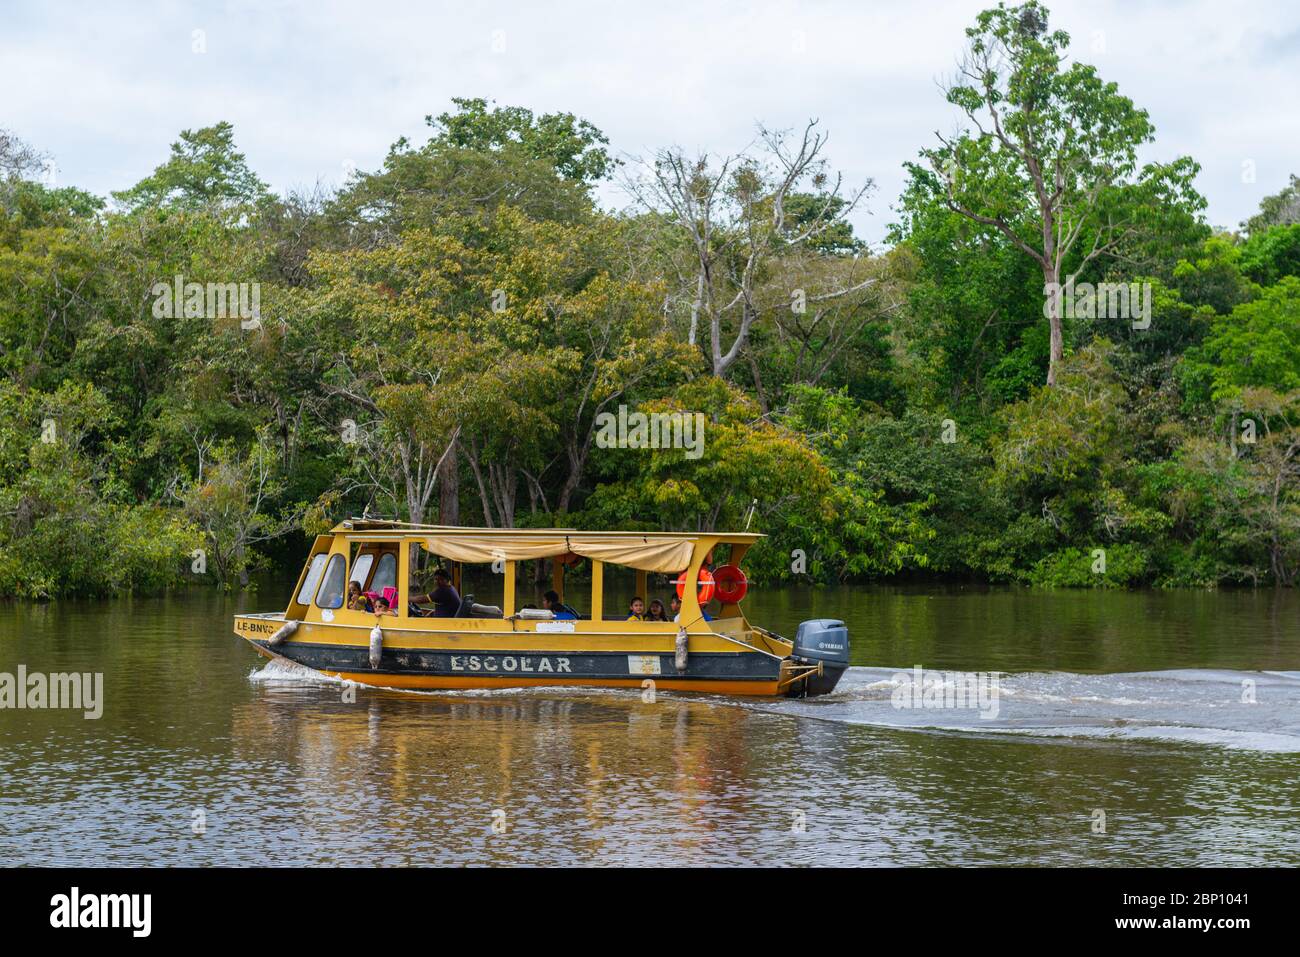 Les écoliers sont transférés à la maison par bateau, rivière Amazonas près de Manaus, l'Amazone, Brésil, Amérique latine Banque D'Images